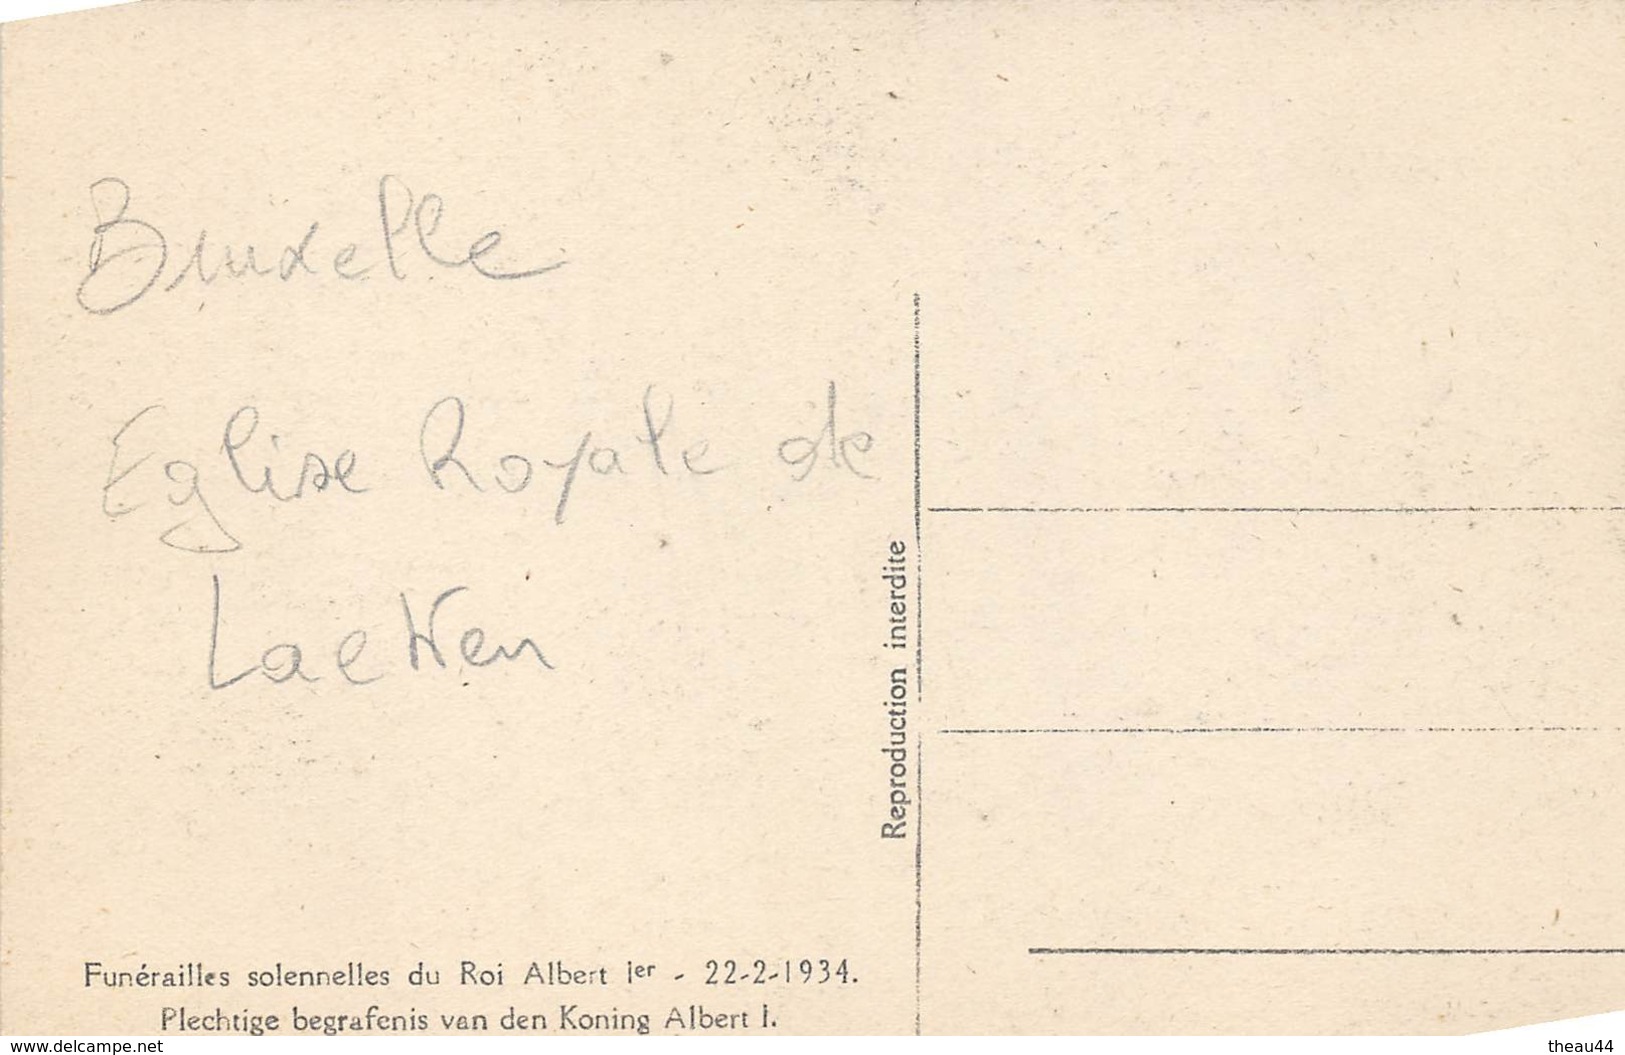 ¤¤   -  BELGIQUE  -  BRUXELLES  -  Lot de 9 Cartes des Funérailles du Roi ALBERT 1er en 1934  -  ¤¤